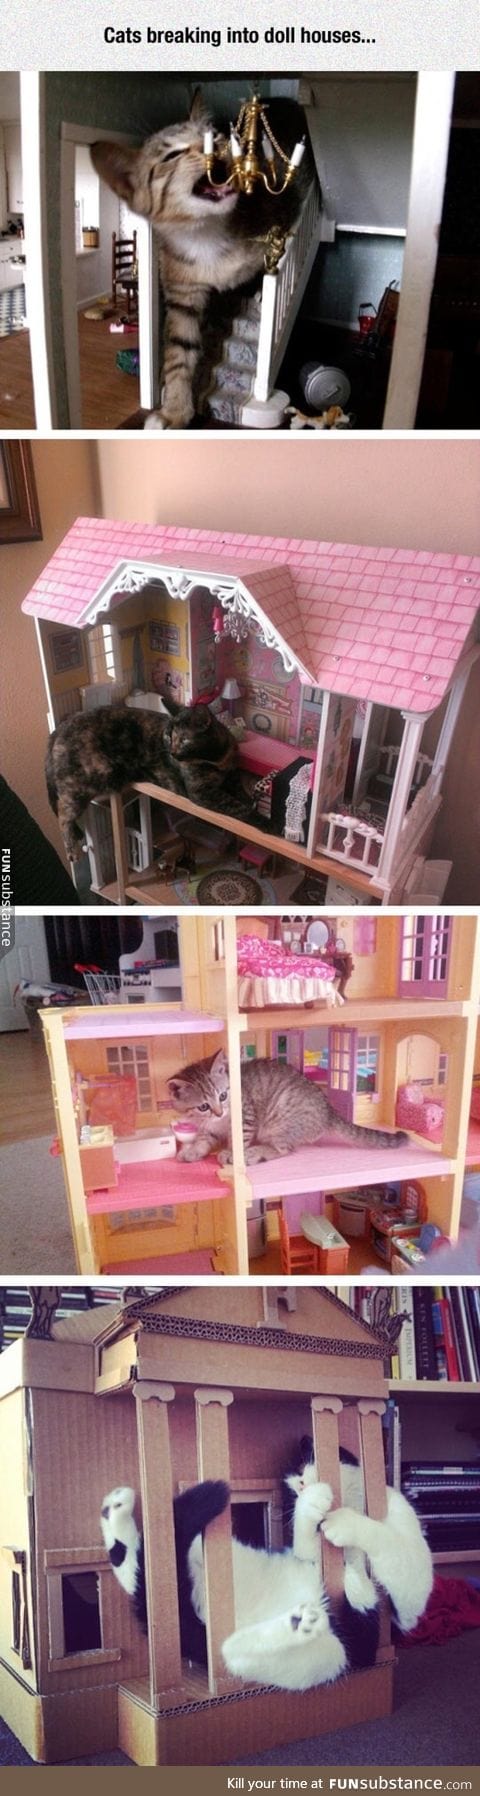 Cat in a mini house